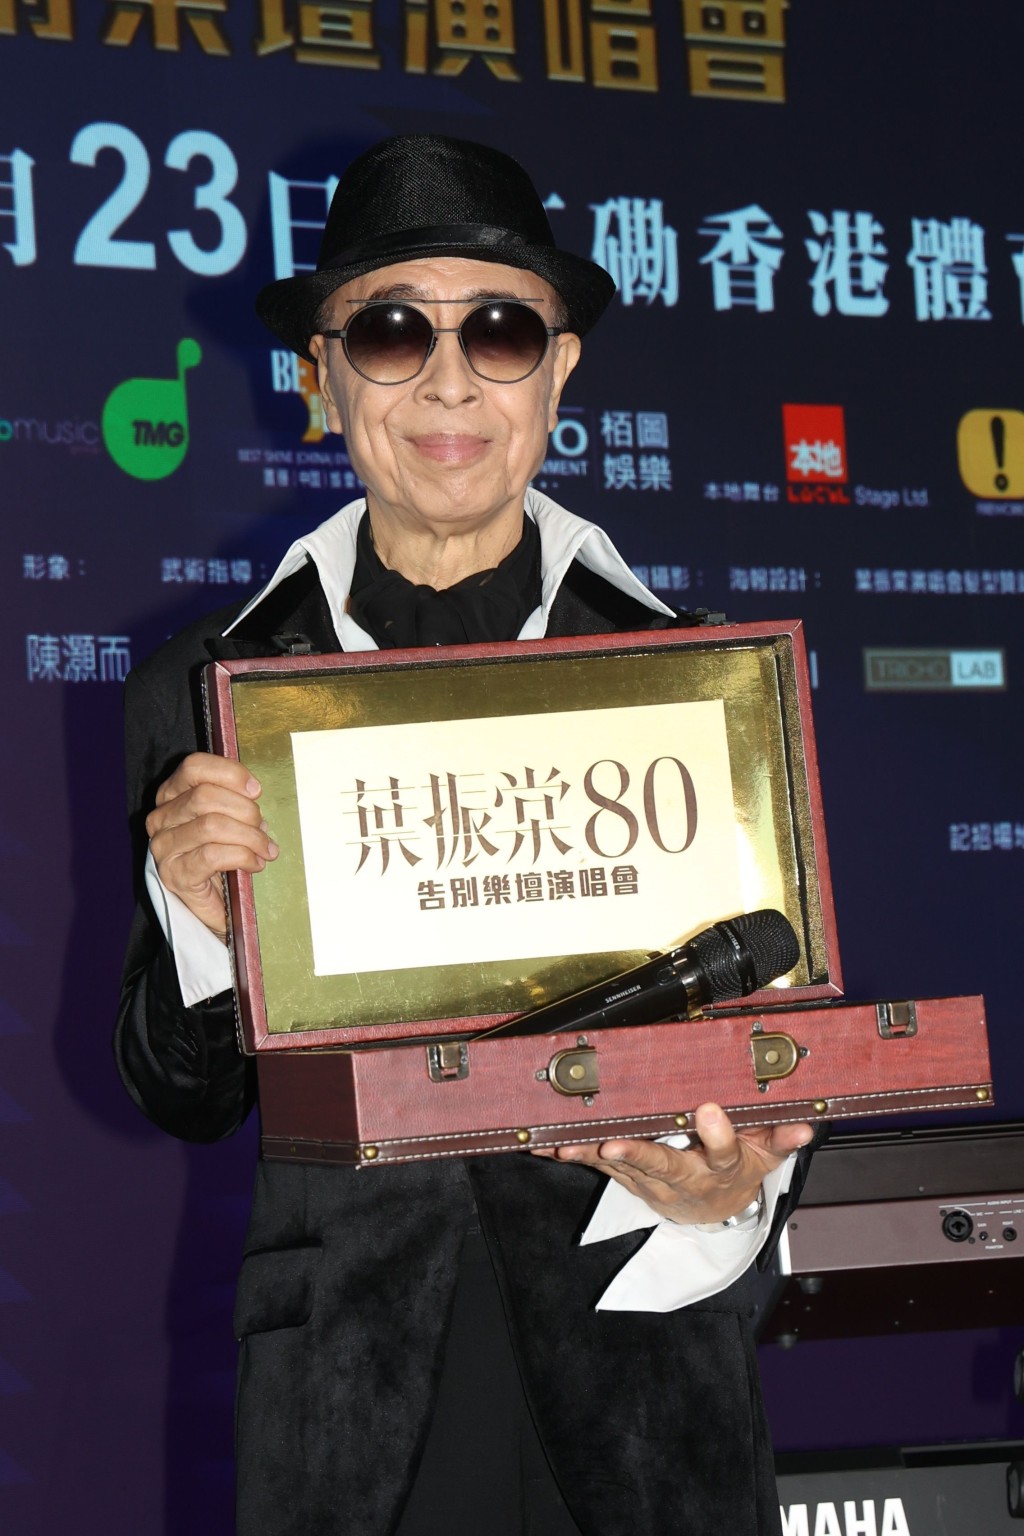 現年80歲的殿堂級歌手葉振棠，將於下月23日舉行首個紅館演唱會「葉振棠 80告別樂壇演唱會」。